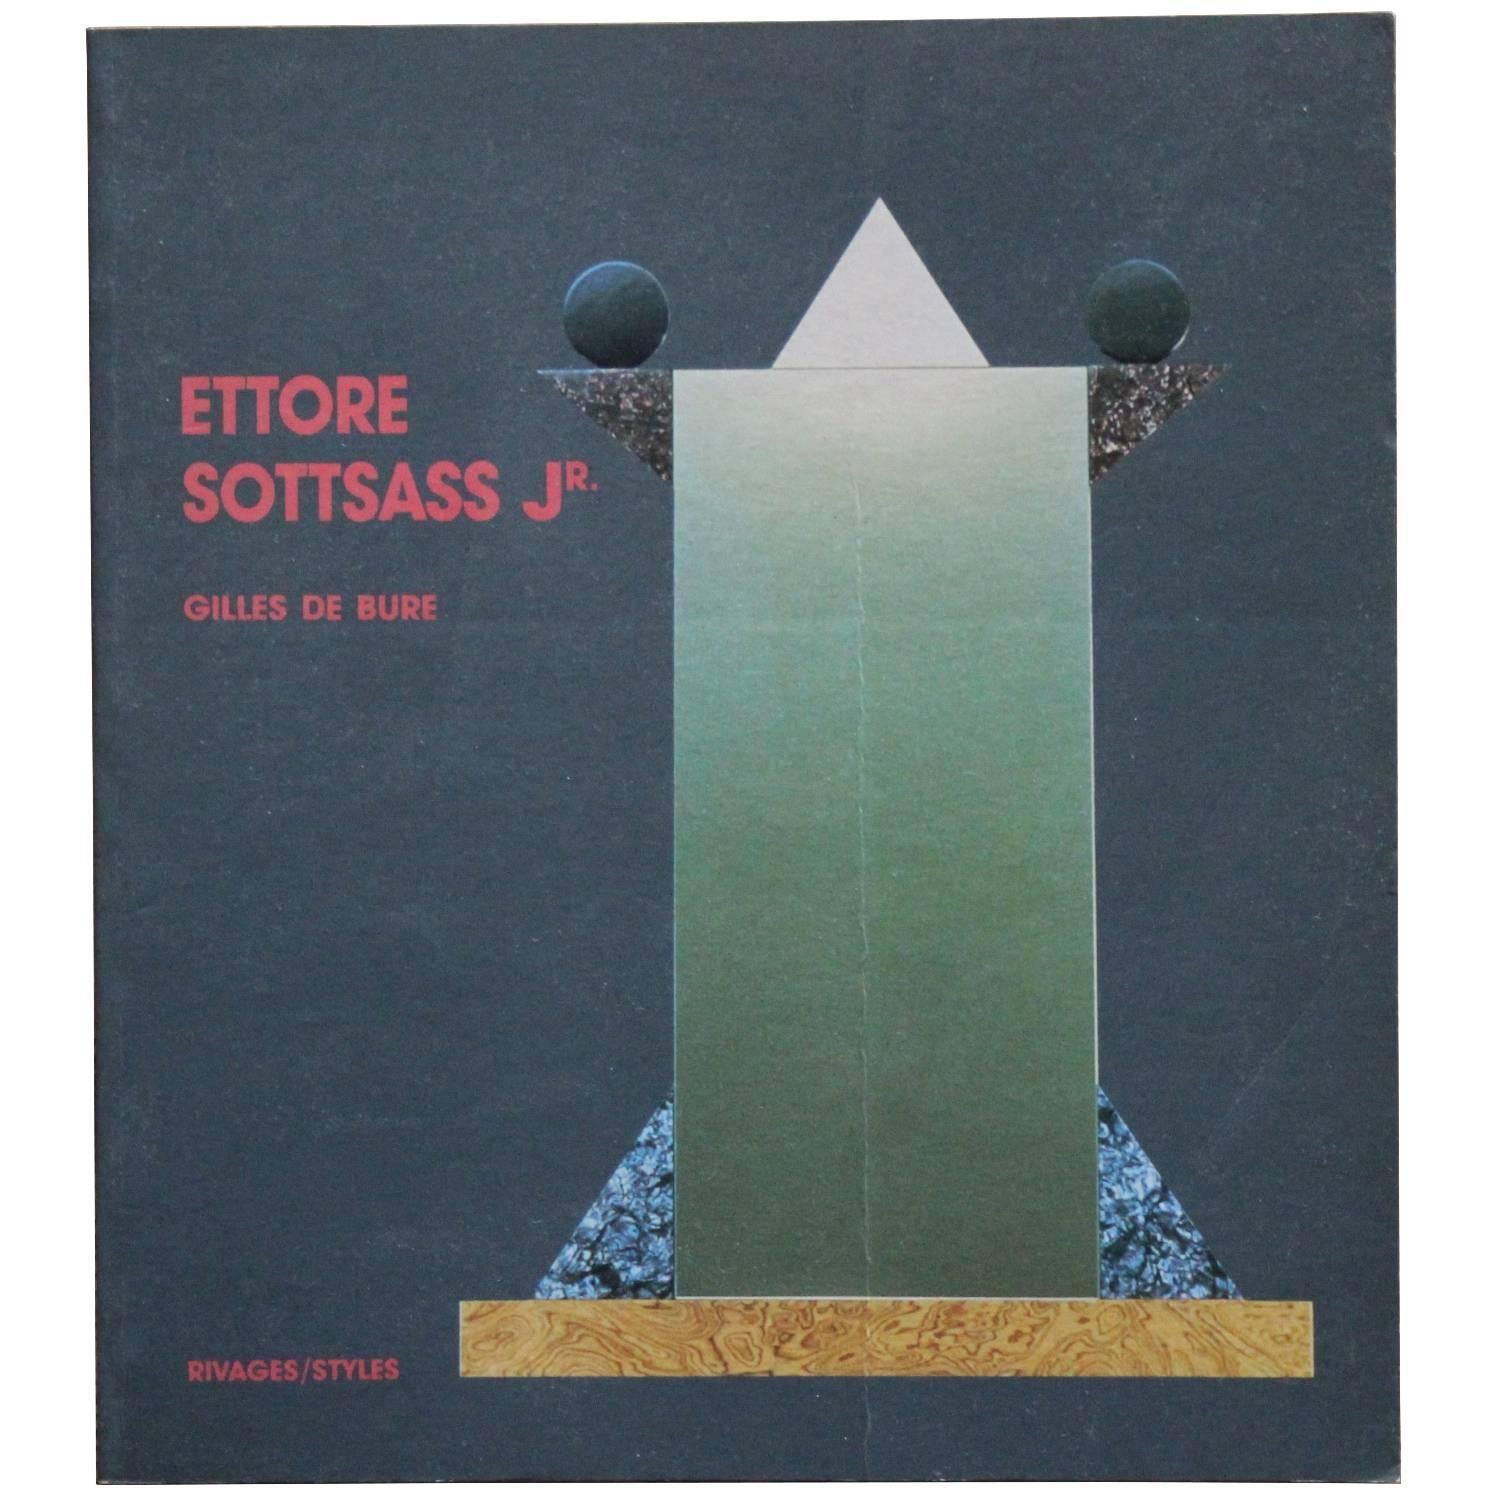 "Ettore Sottsass Jr" Book